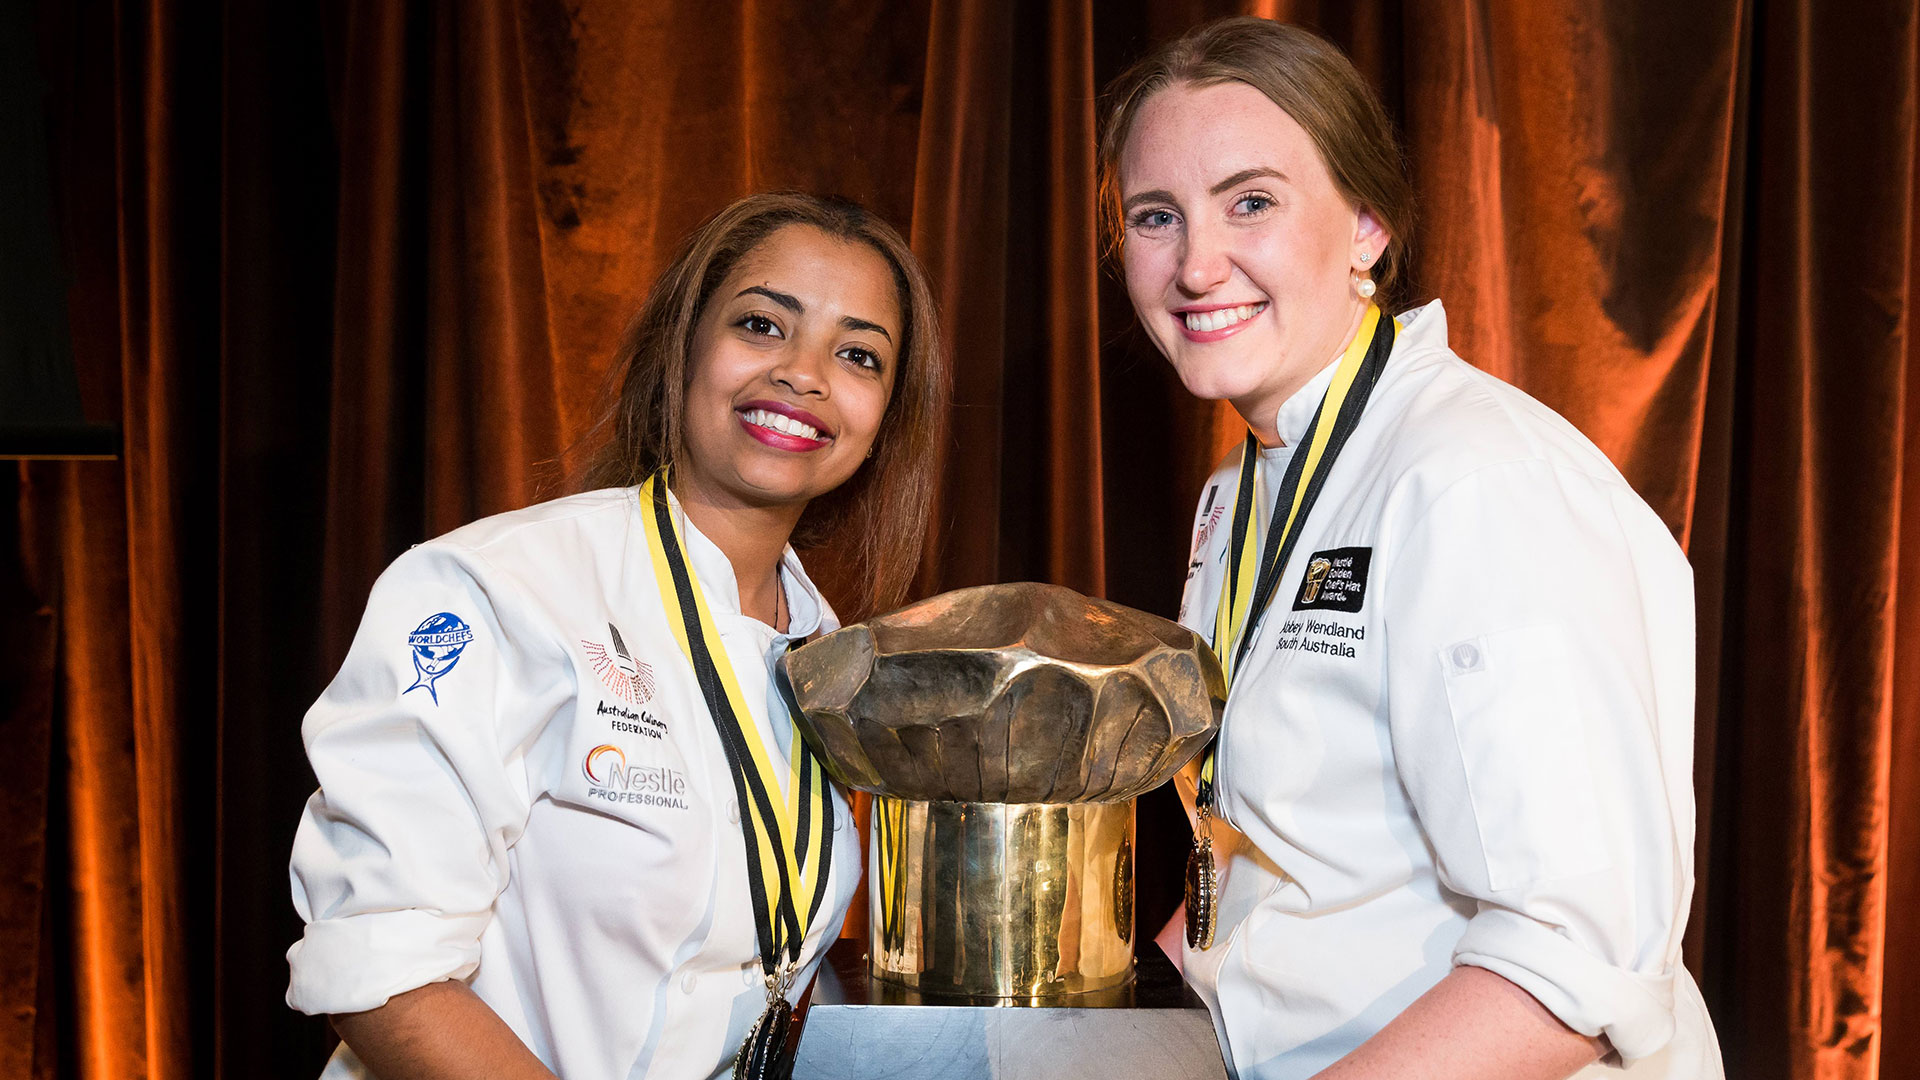 Adelaide Oval Award Winning Chefs